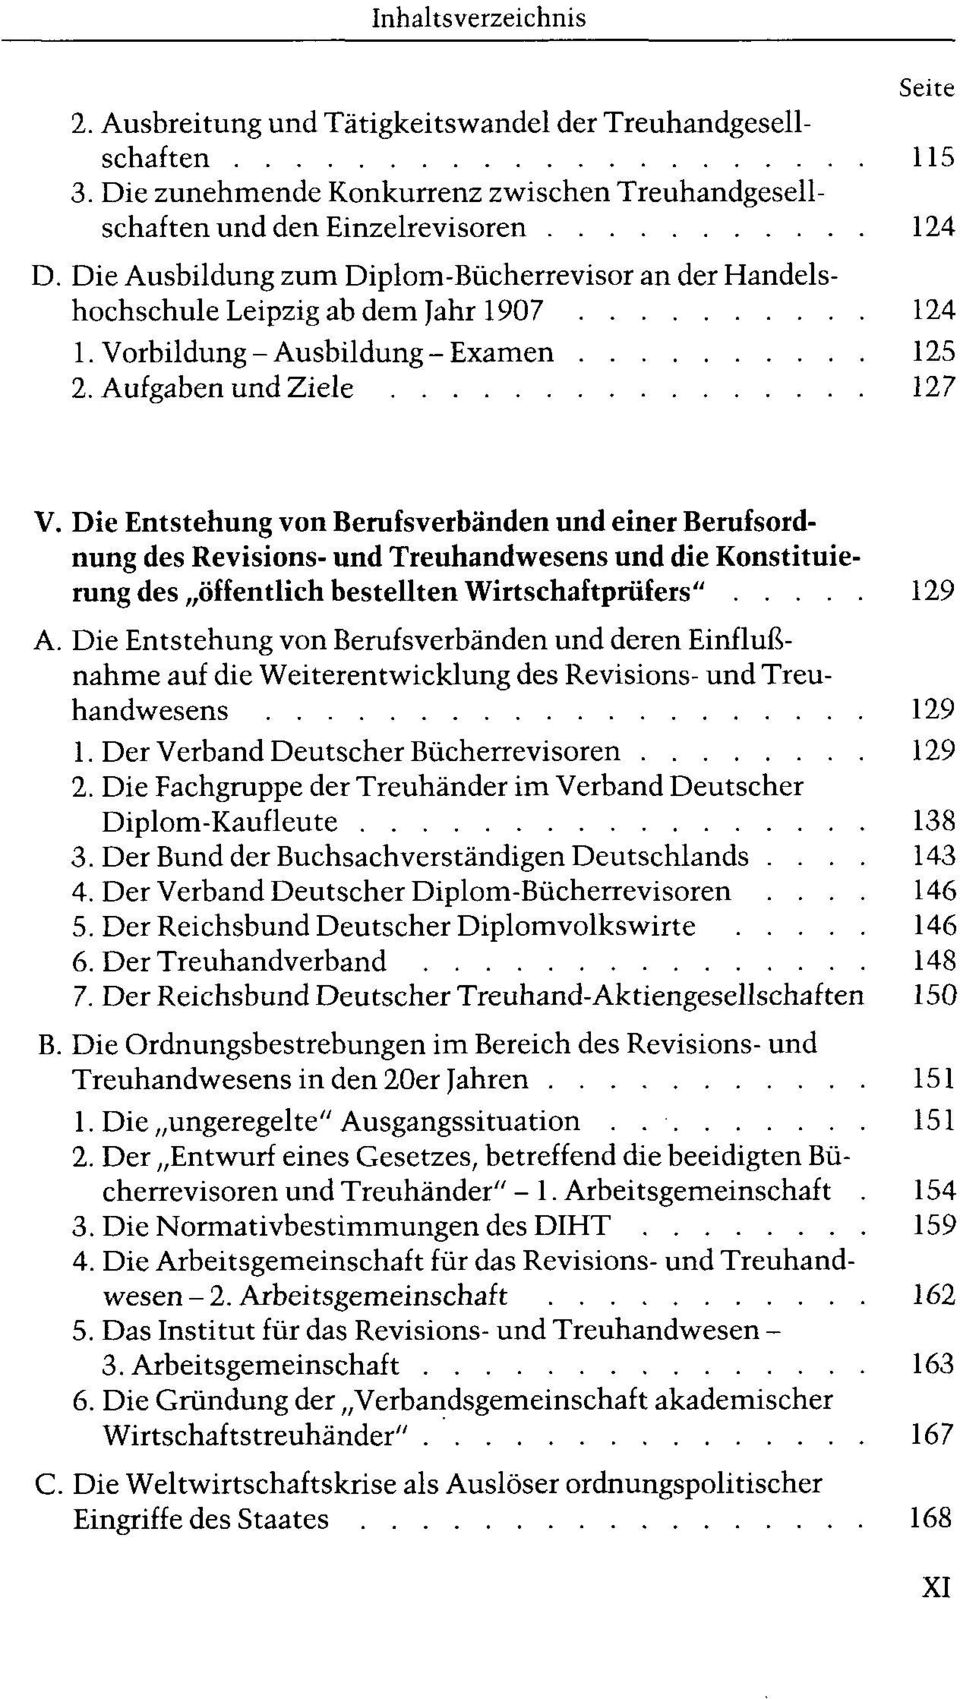 Die Entstehung von Berufsverbänden und einer Berufsordnung des Revisions- und Treuhandwesens und die Konstituierung des öffentlich bestellten Wirtschaftprüfers" 129 A.